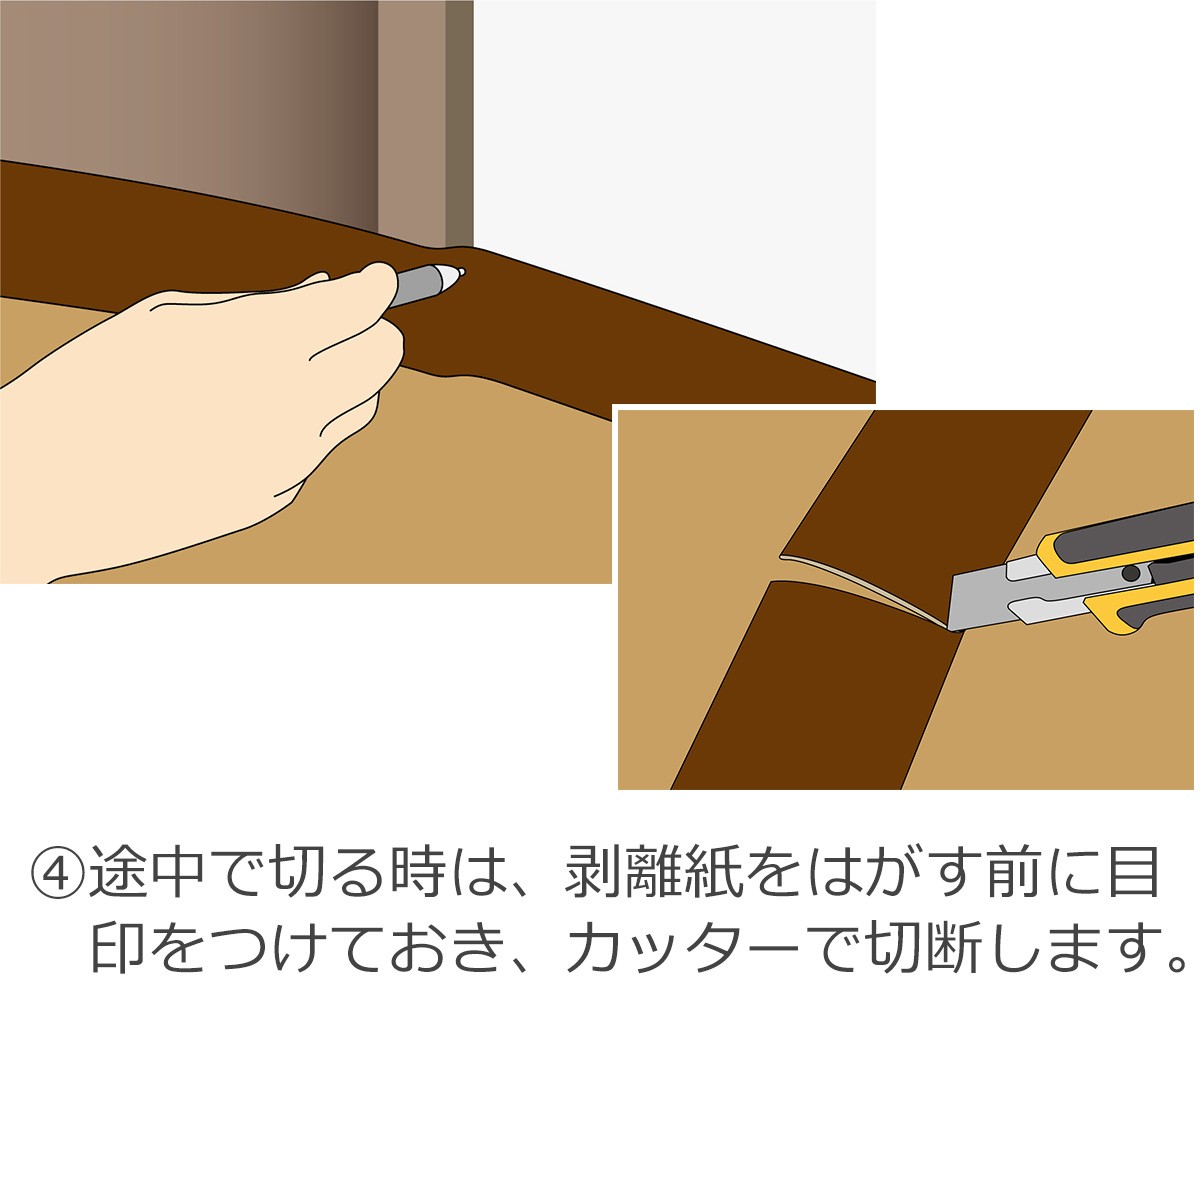 ４・途中で切る時は、剥離紙をはがす前に目印をつけておき、カッターで切断します。